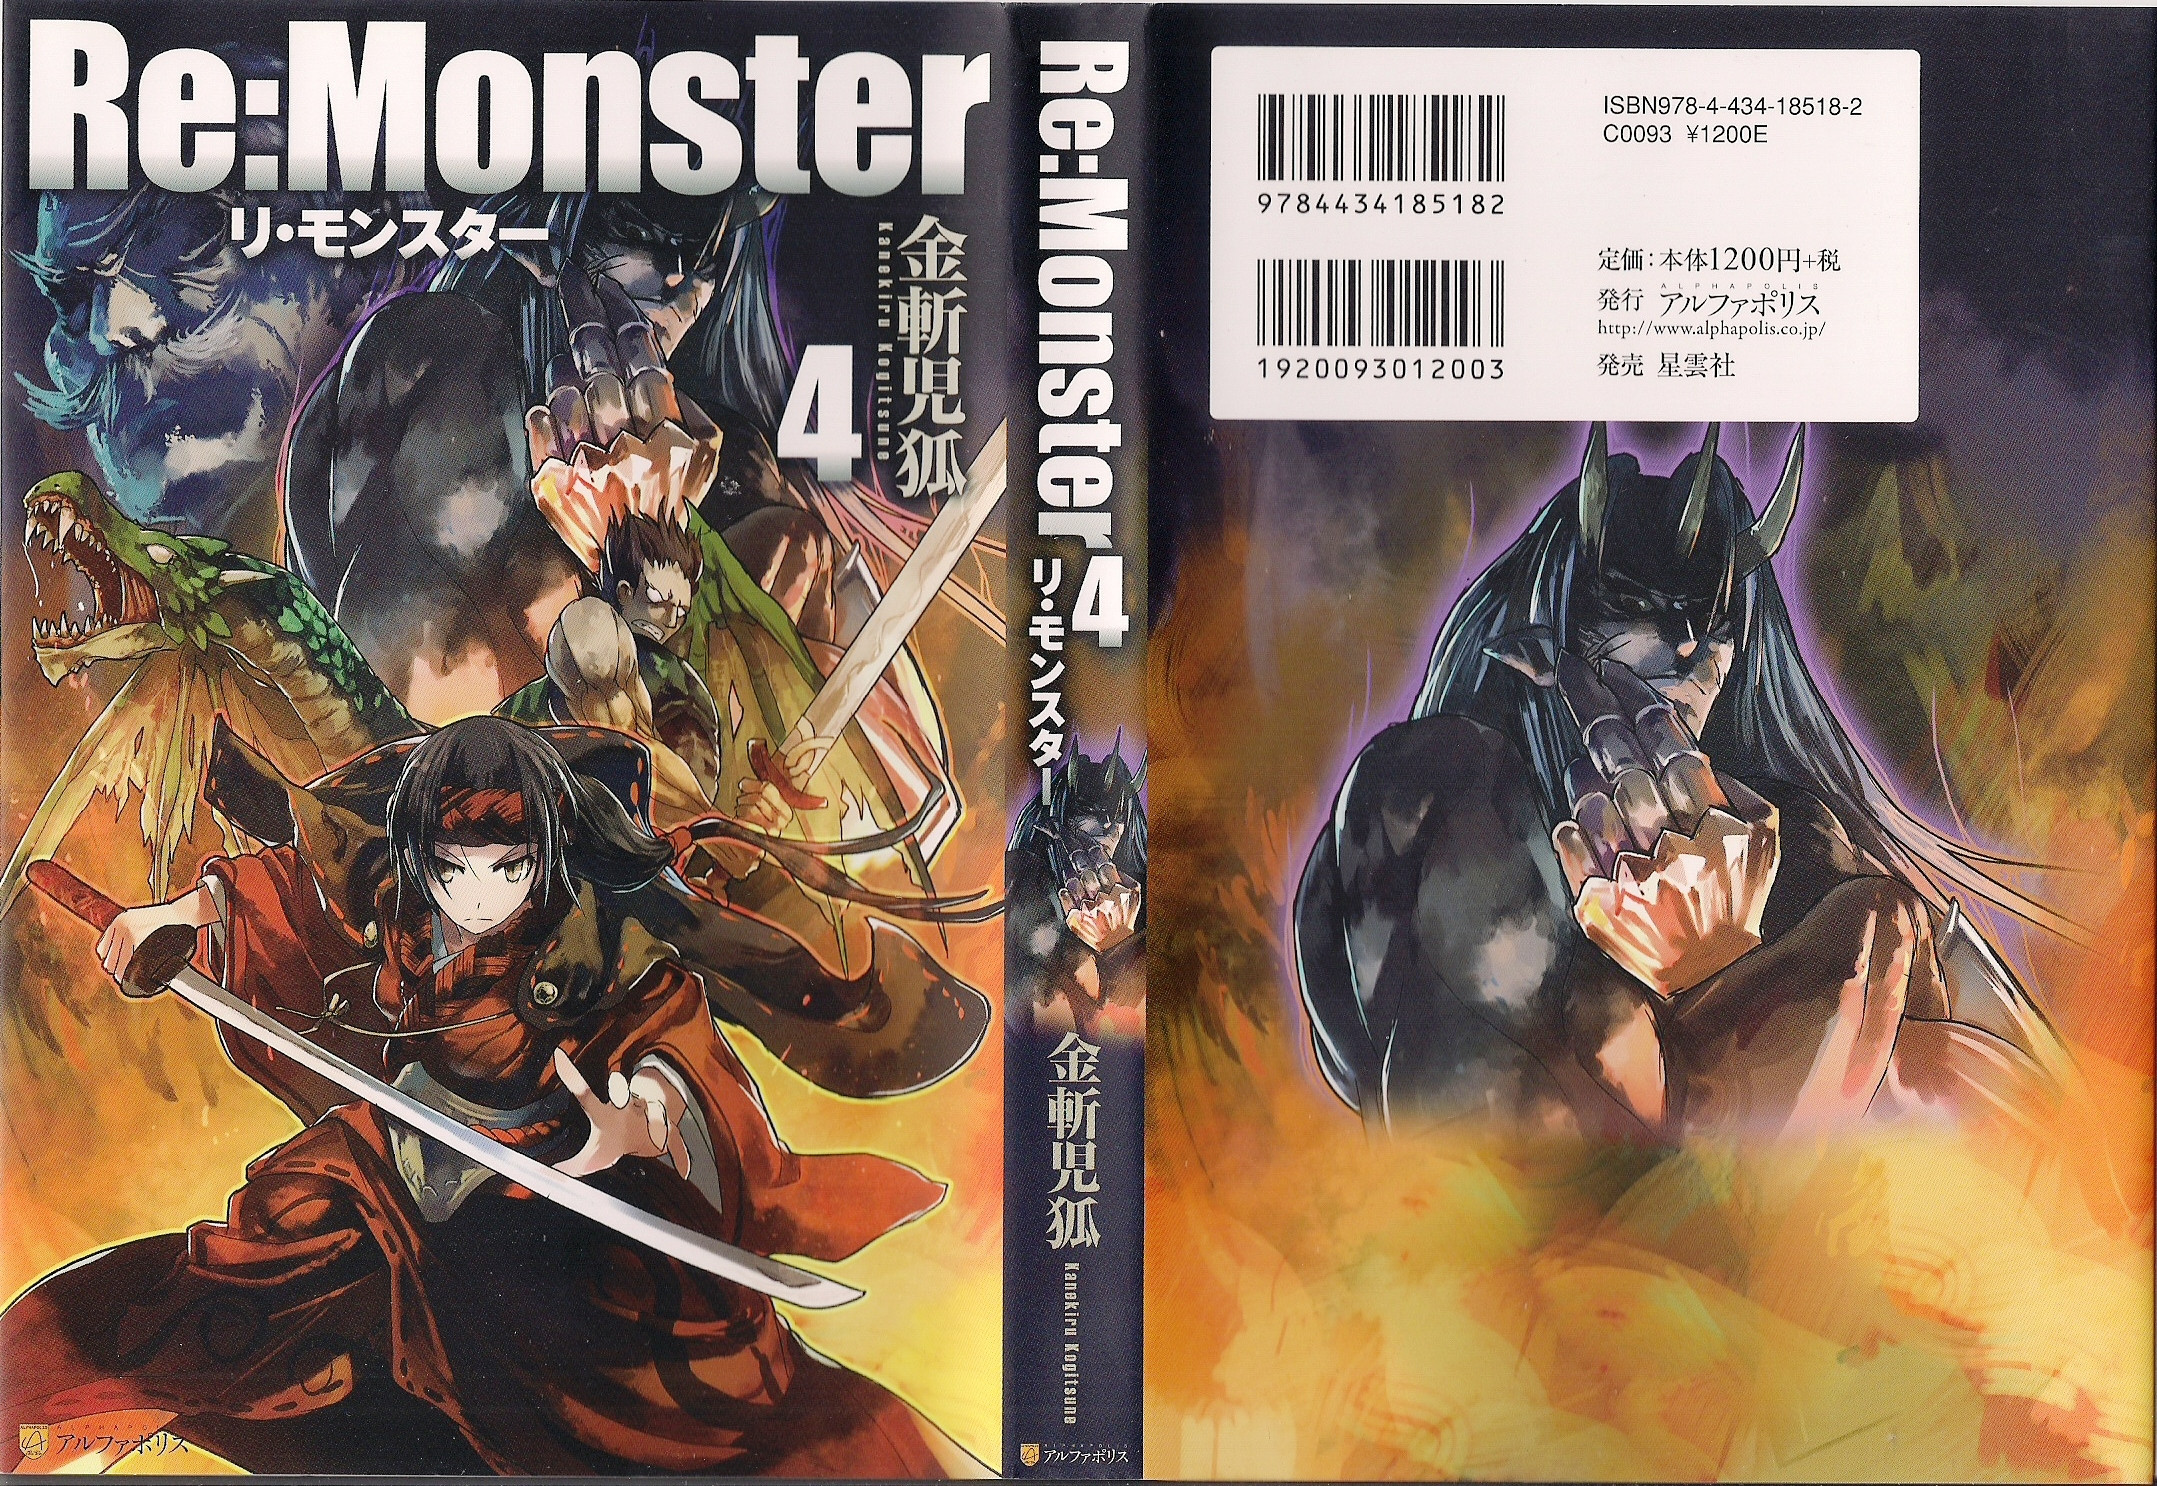 Re:Monster #8